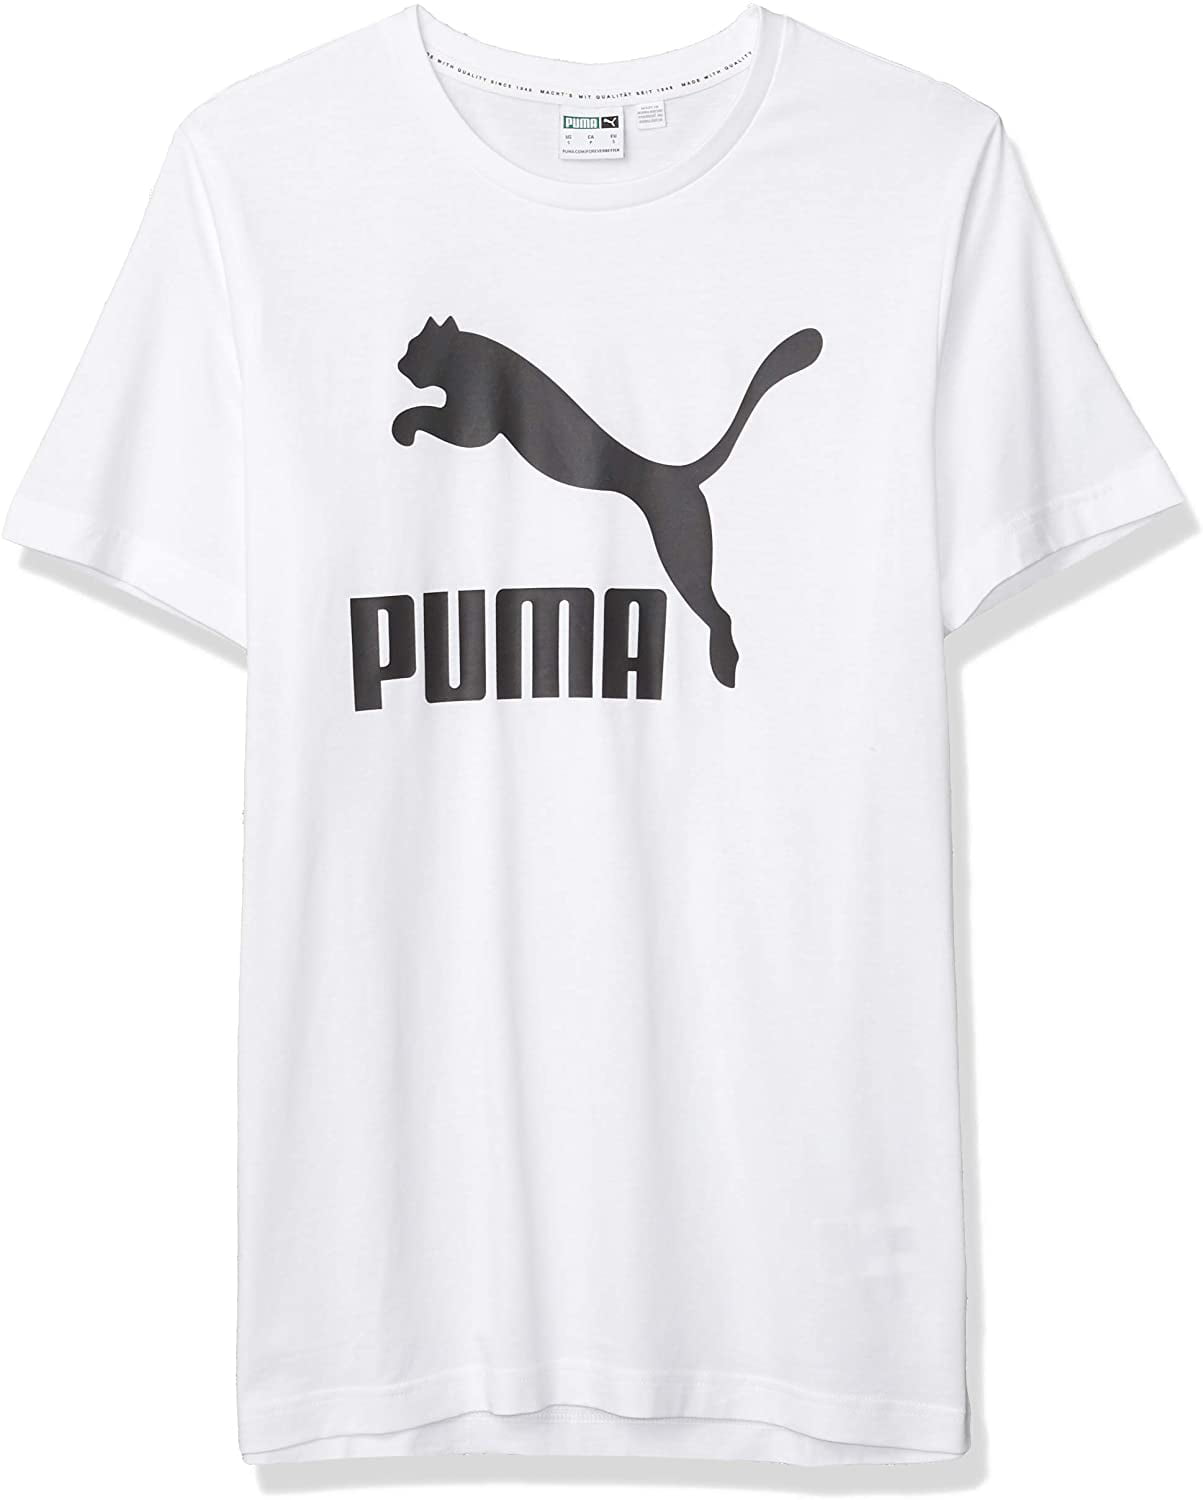 PUMA - PUMA Men's Classics Logo T-Shirt - Walmart.com - Walmart.com